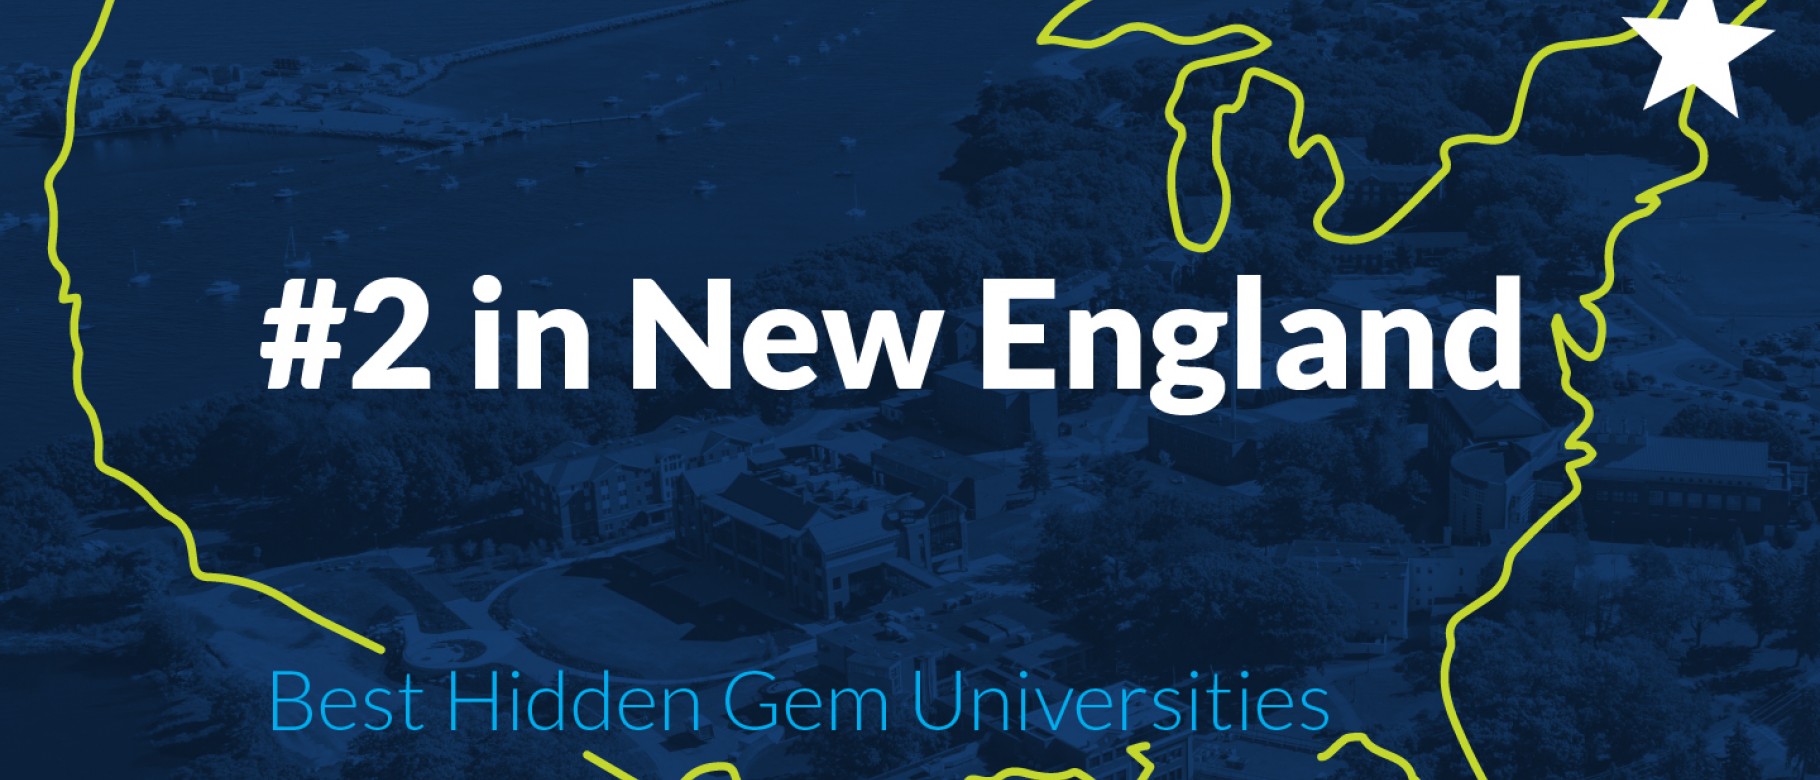 UNE named one of 10 best hidden gem universities in New England